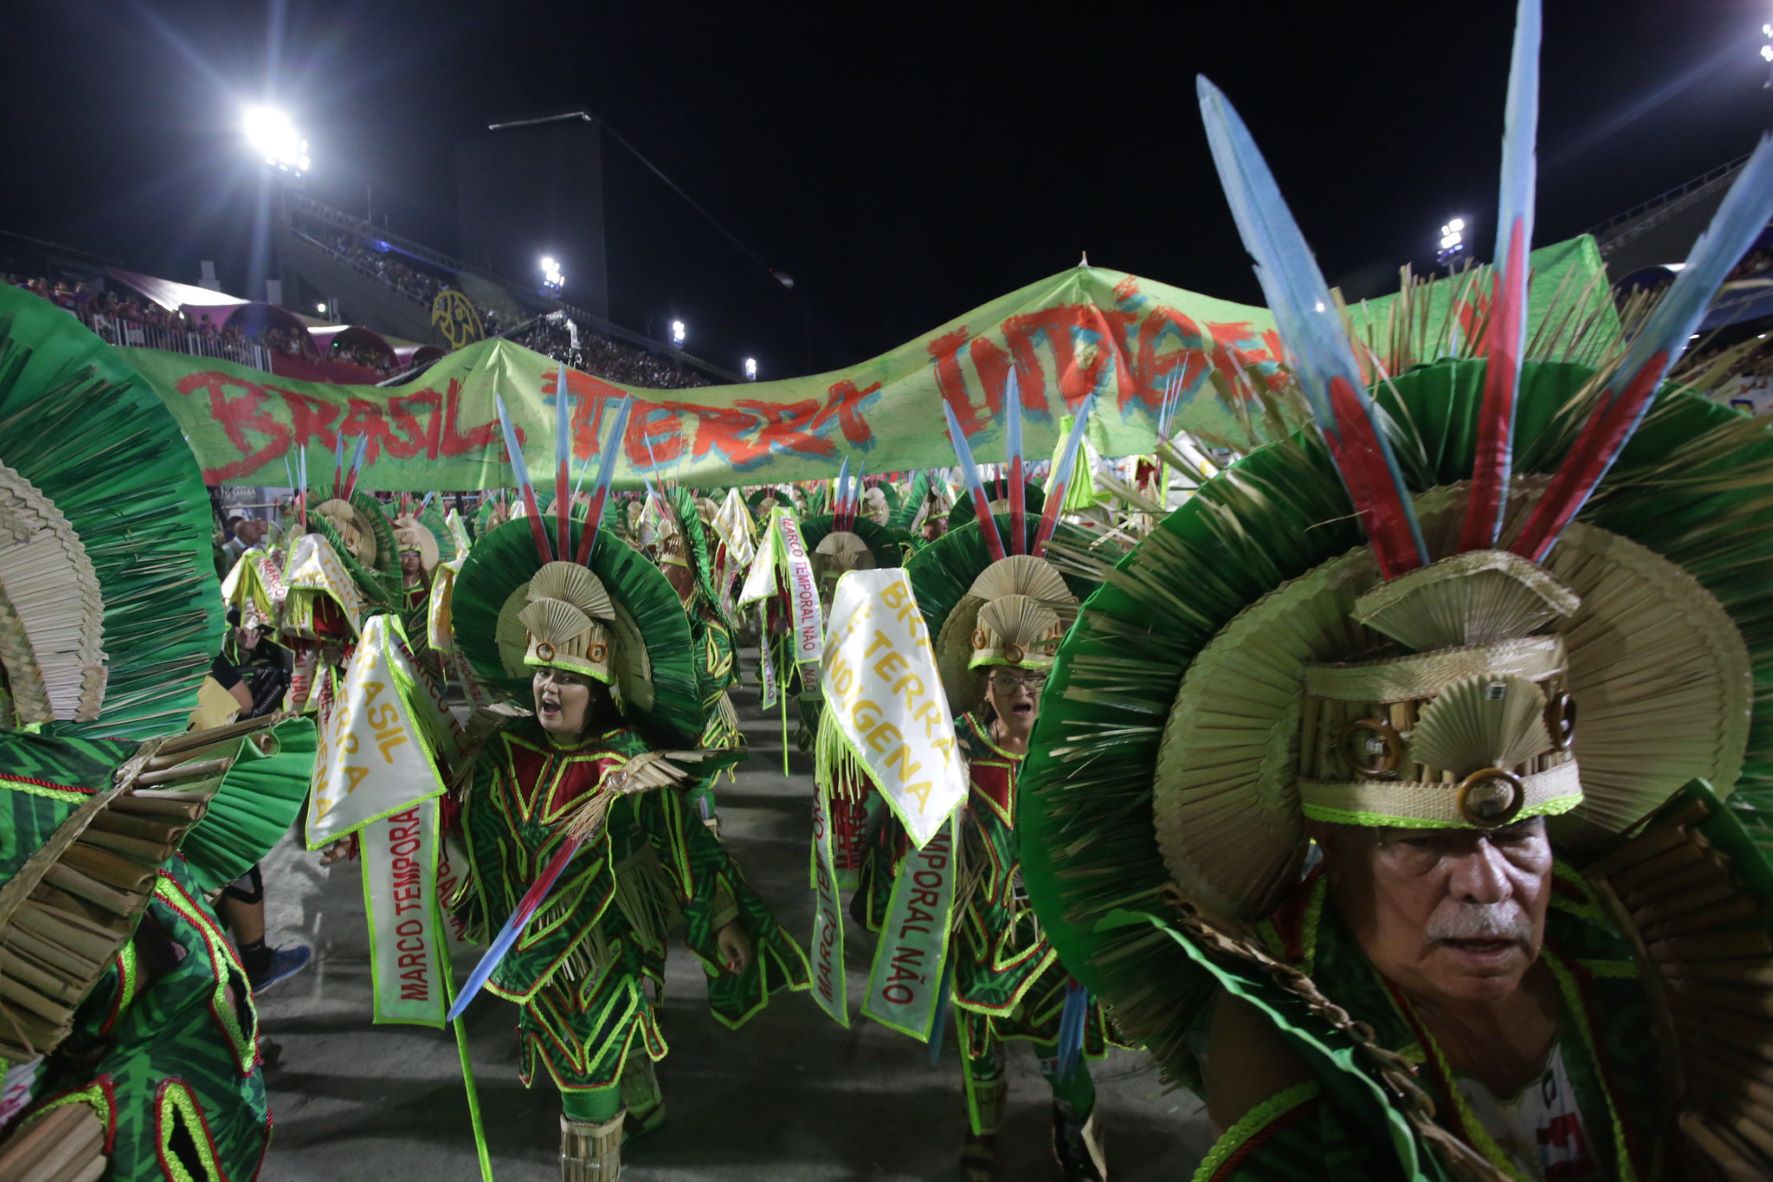 Ala de indígenas com o "Não ao Marco Temporal": desfile panfletário da Beija-Flor pelos excluídos (Foto: Tata Barreto / Riotur)